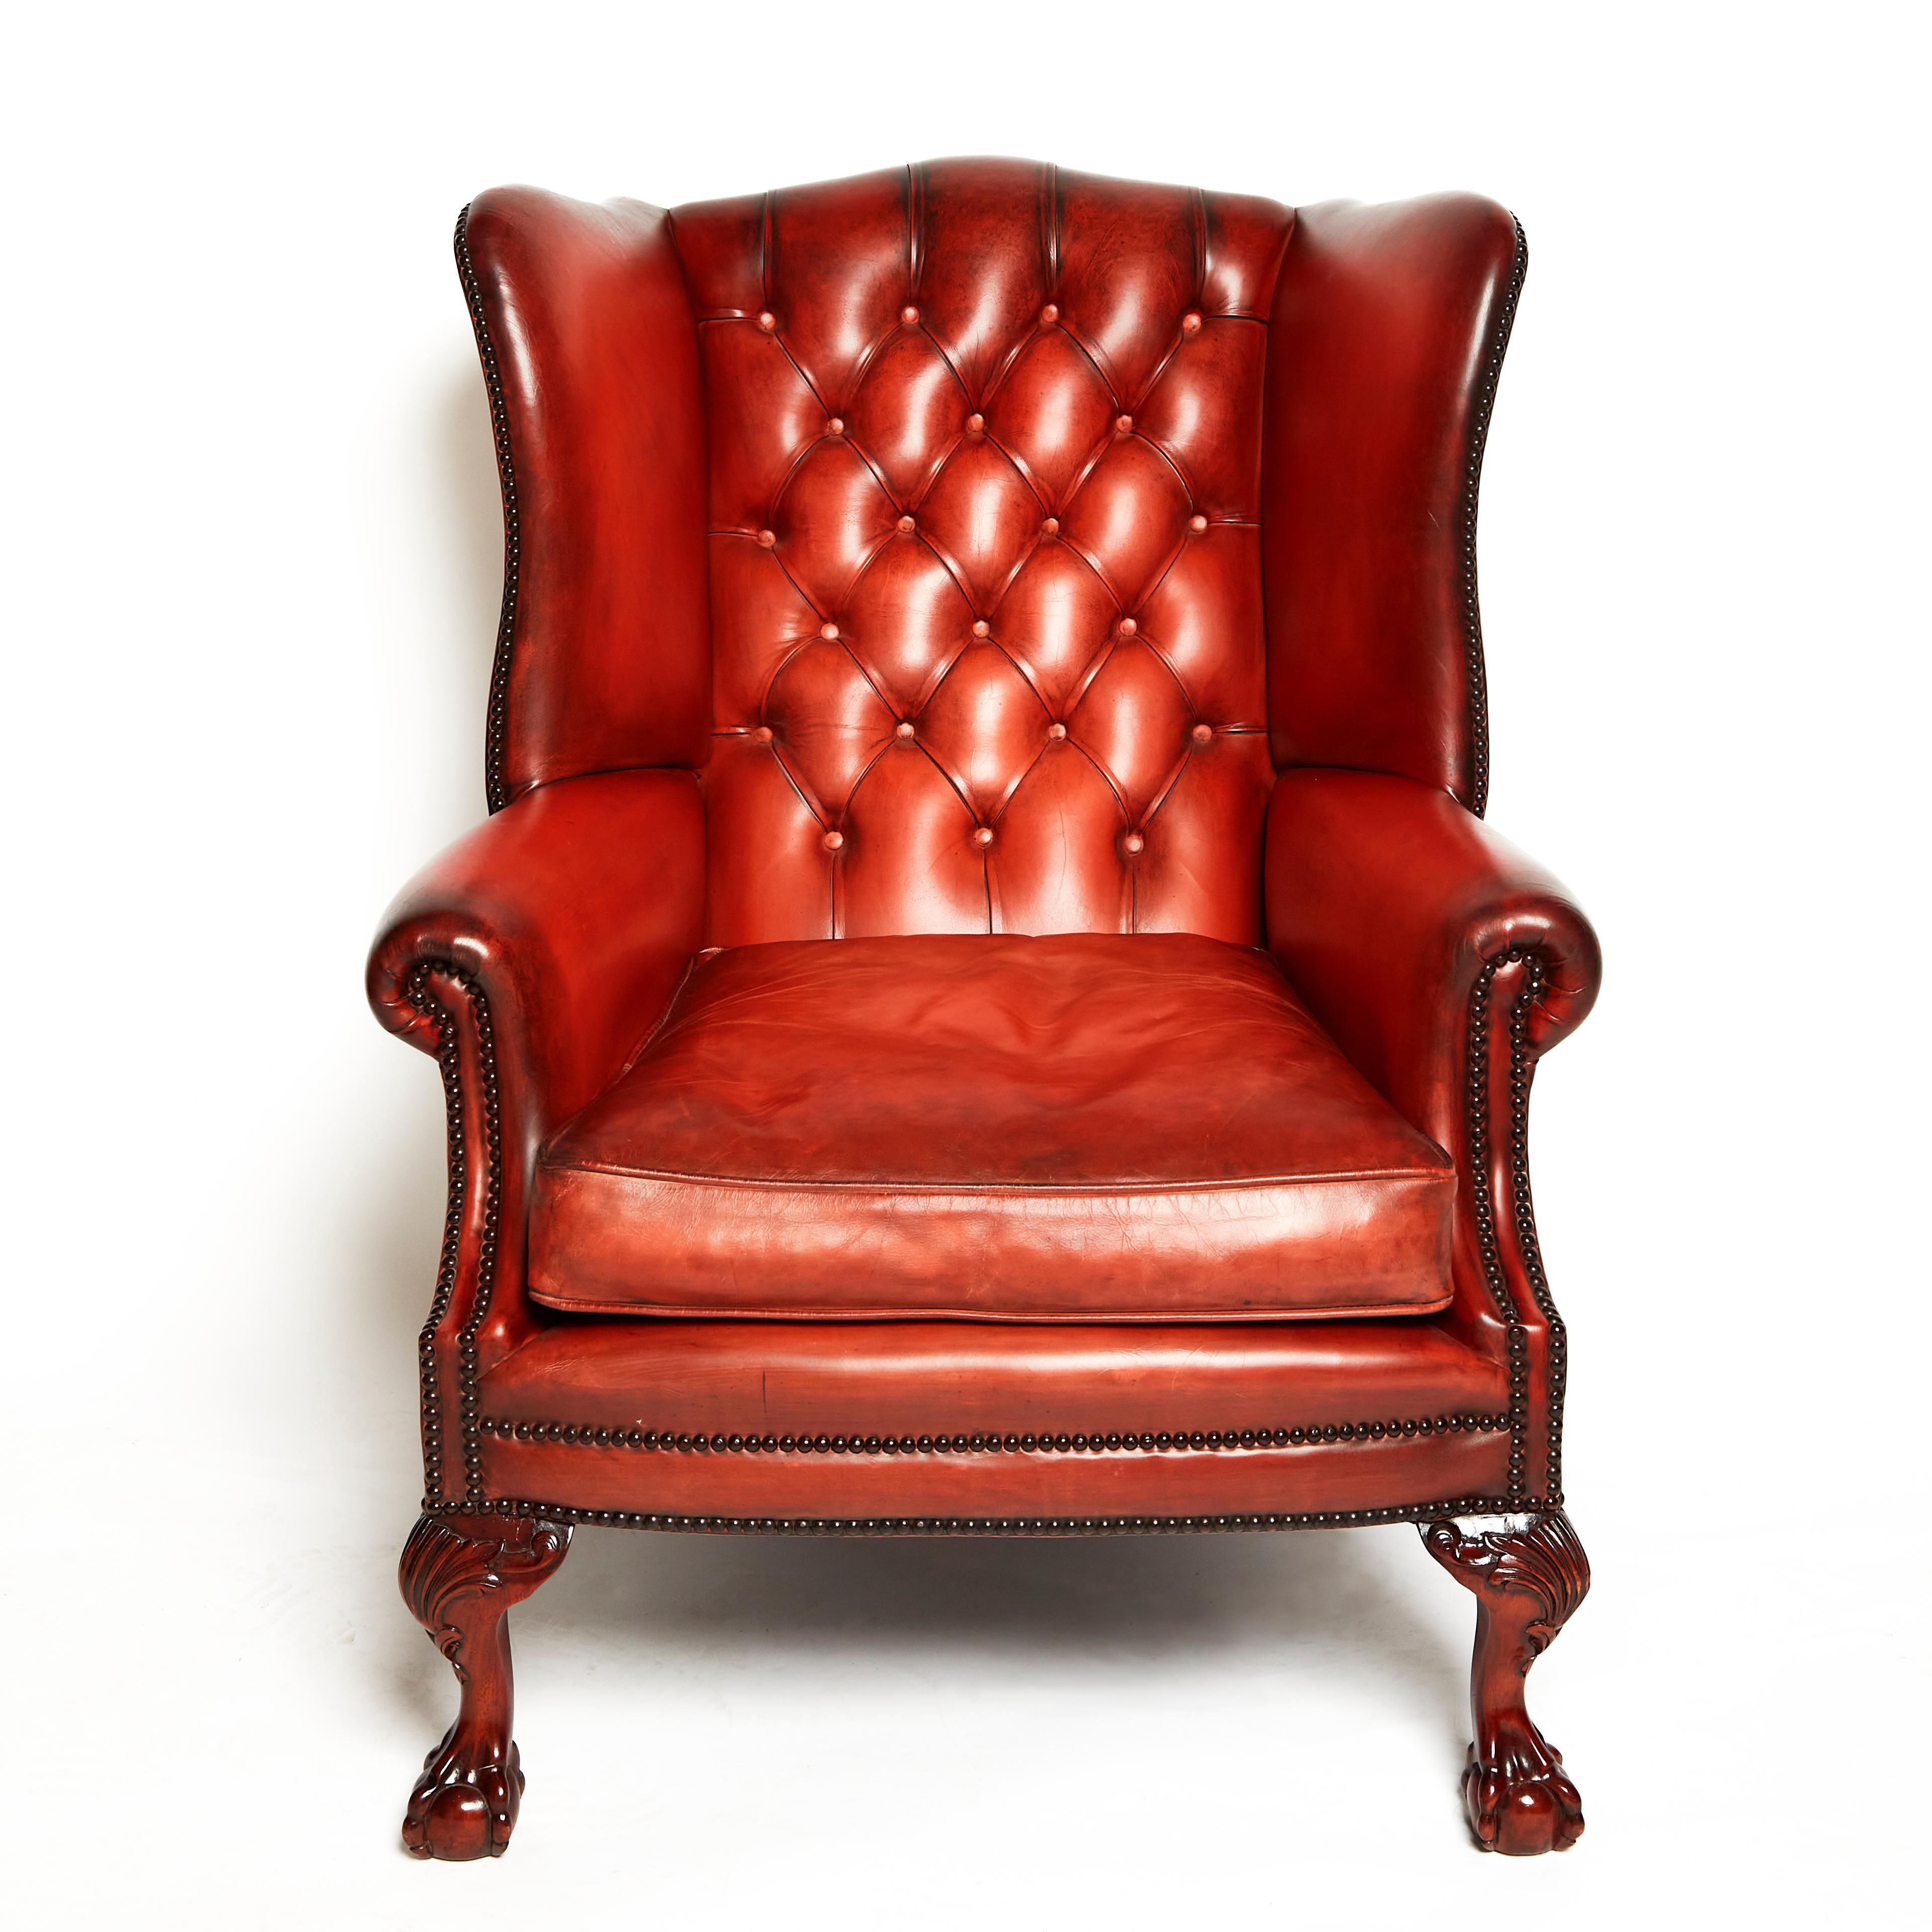 Ce fauteuil à oreilles en cuir anglais de très belle qualité et fabriqué à la main est doté d'un piètement à boules et griffes dans le style du XVIIIe siècle. Il est doté d'un dossier à boutons et d'une assise à coussins séparés, fabriqués selon les